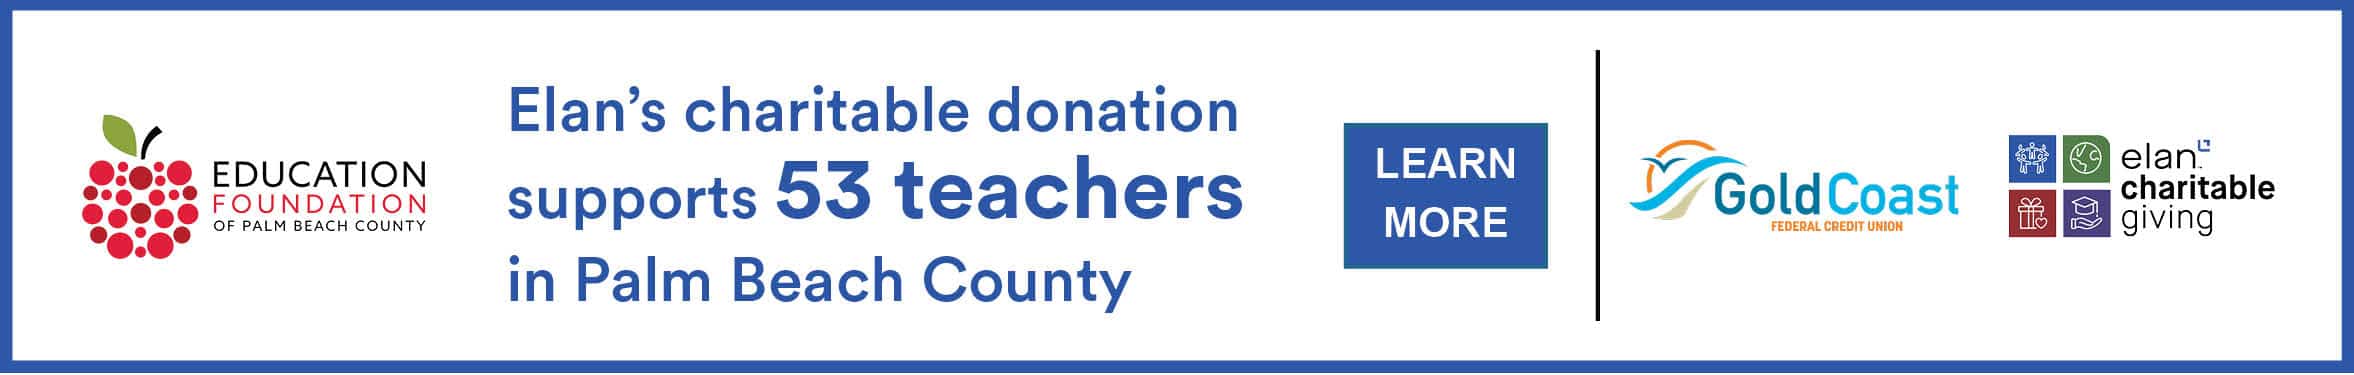 上面写着Elan的慈善捐款支持了棕榈滩县的53名教师